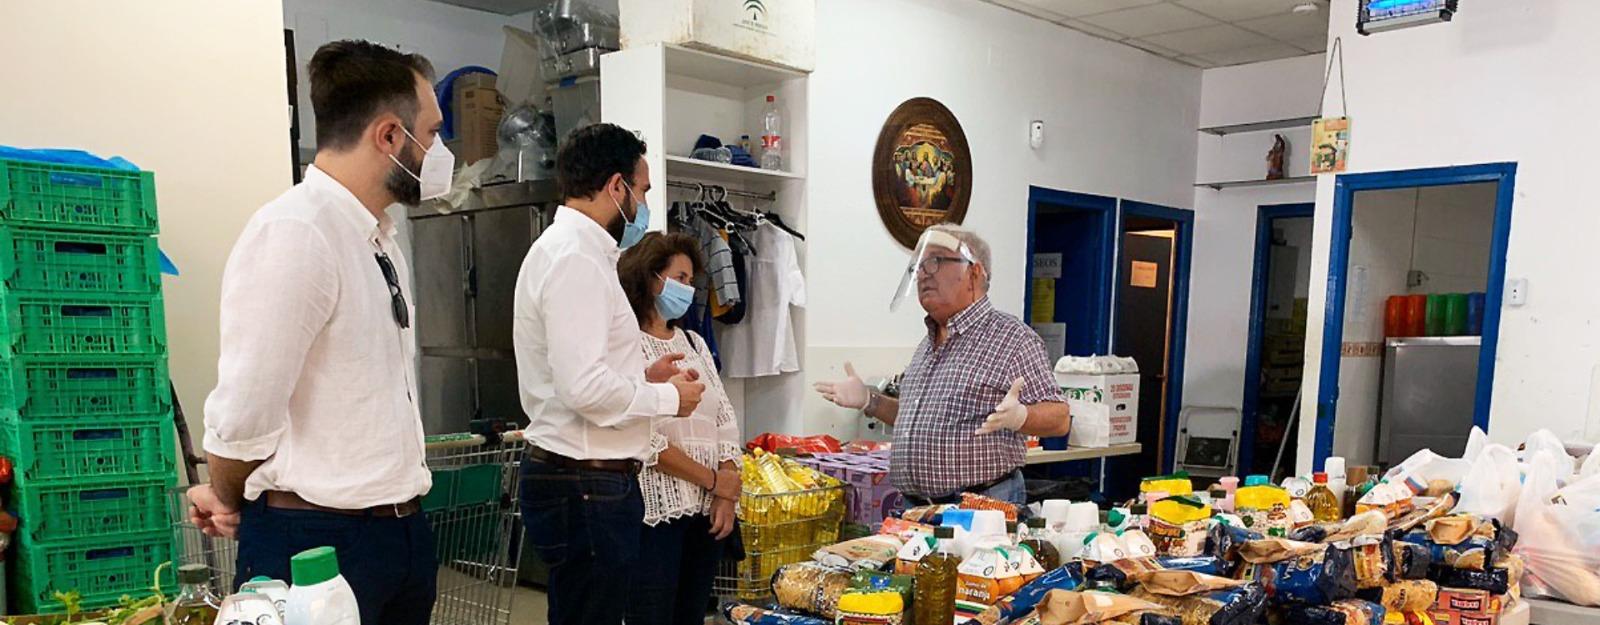 El concejal socialista en el Ayuntamiento de Málaga, Daniel Pérez, visita bancos de alimentos y economatos.